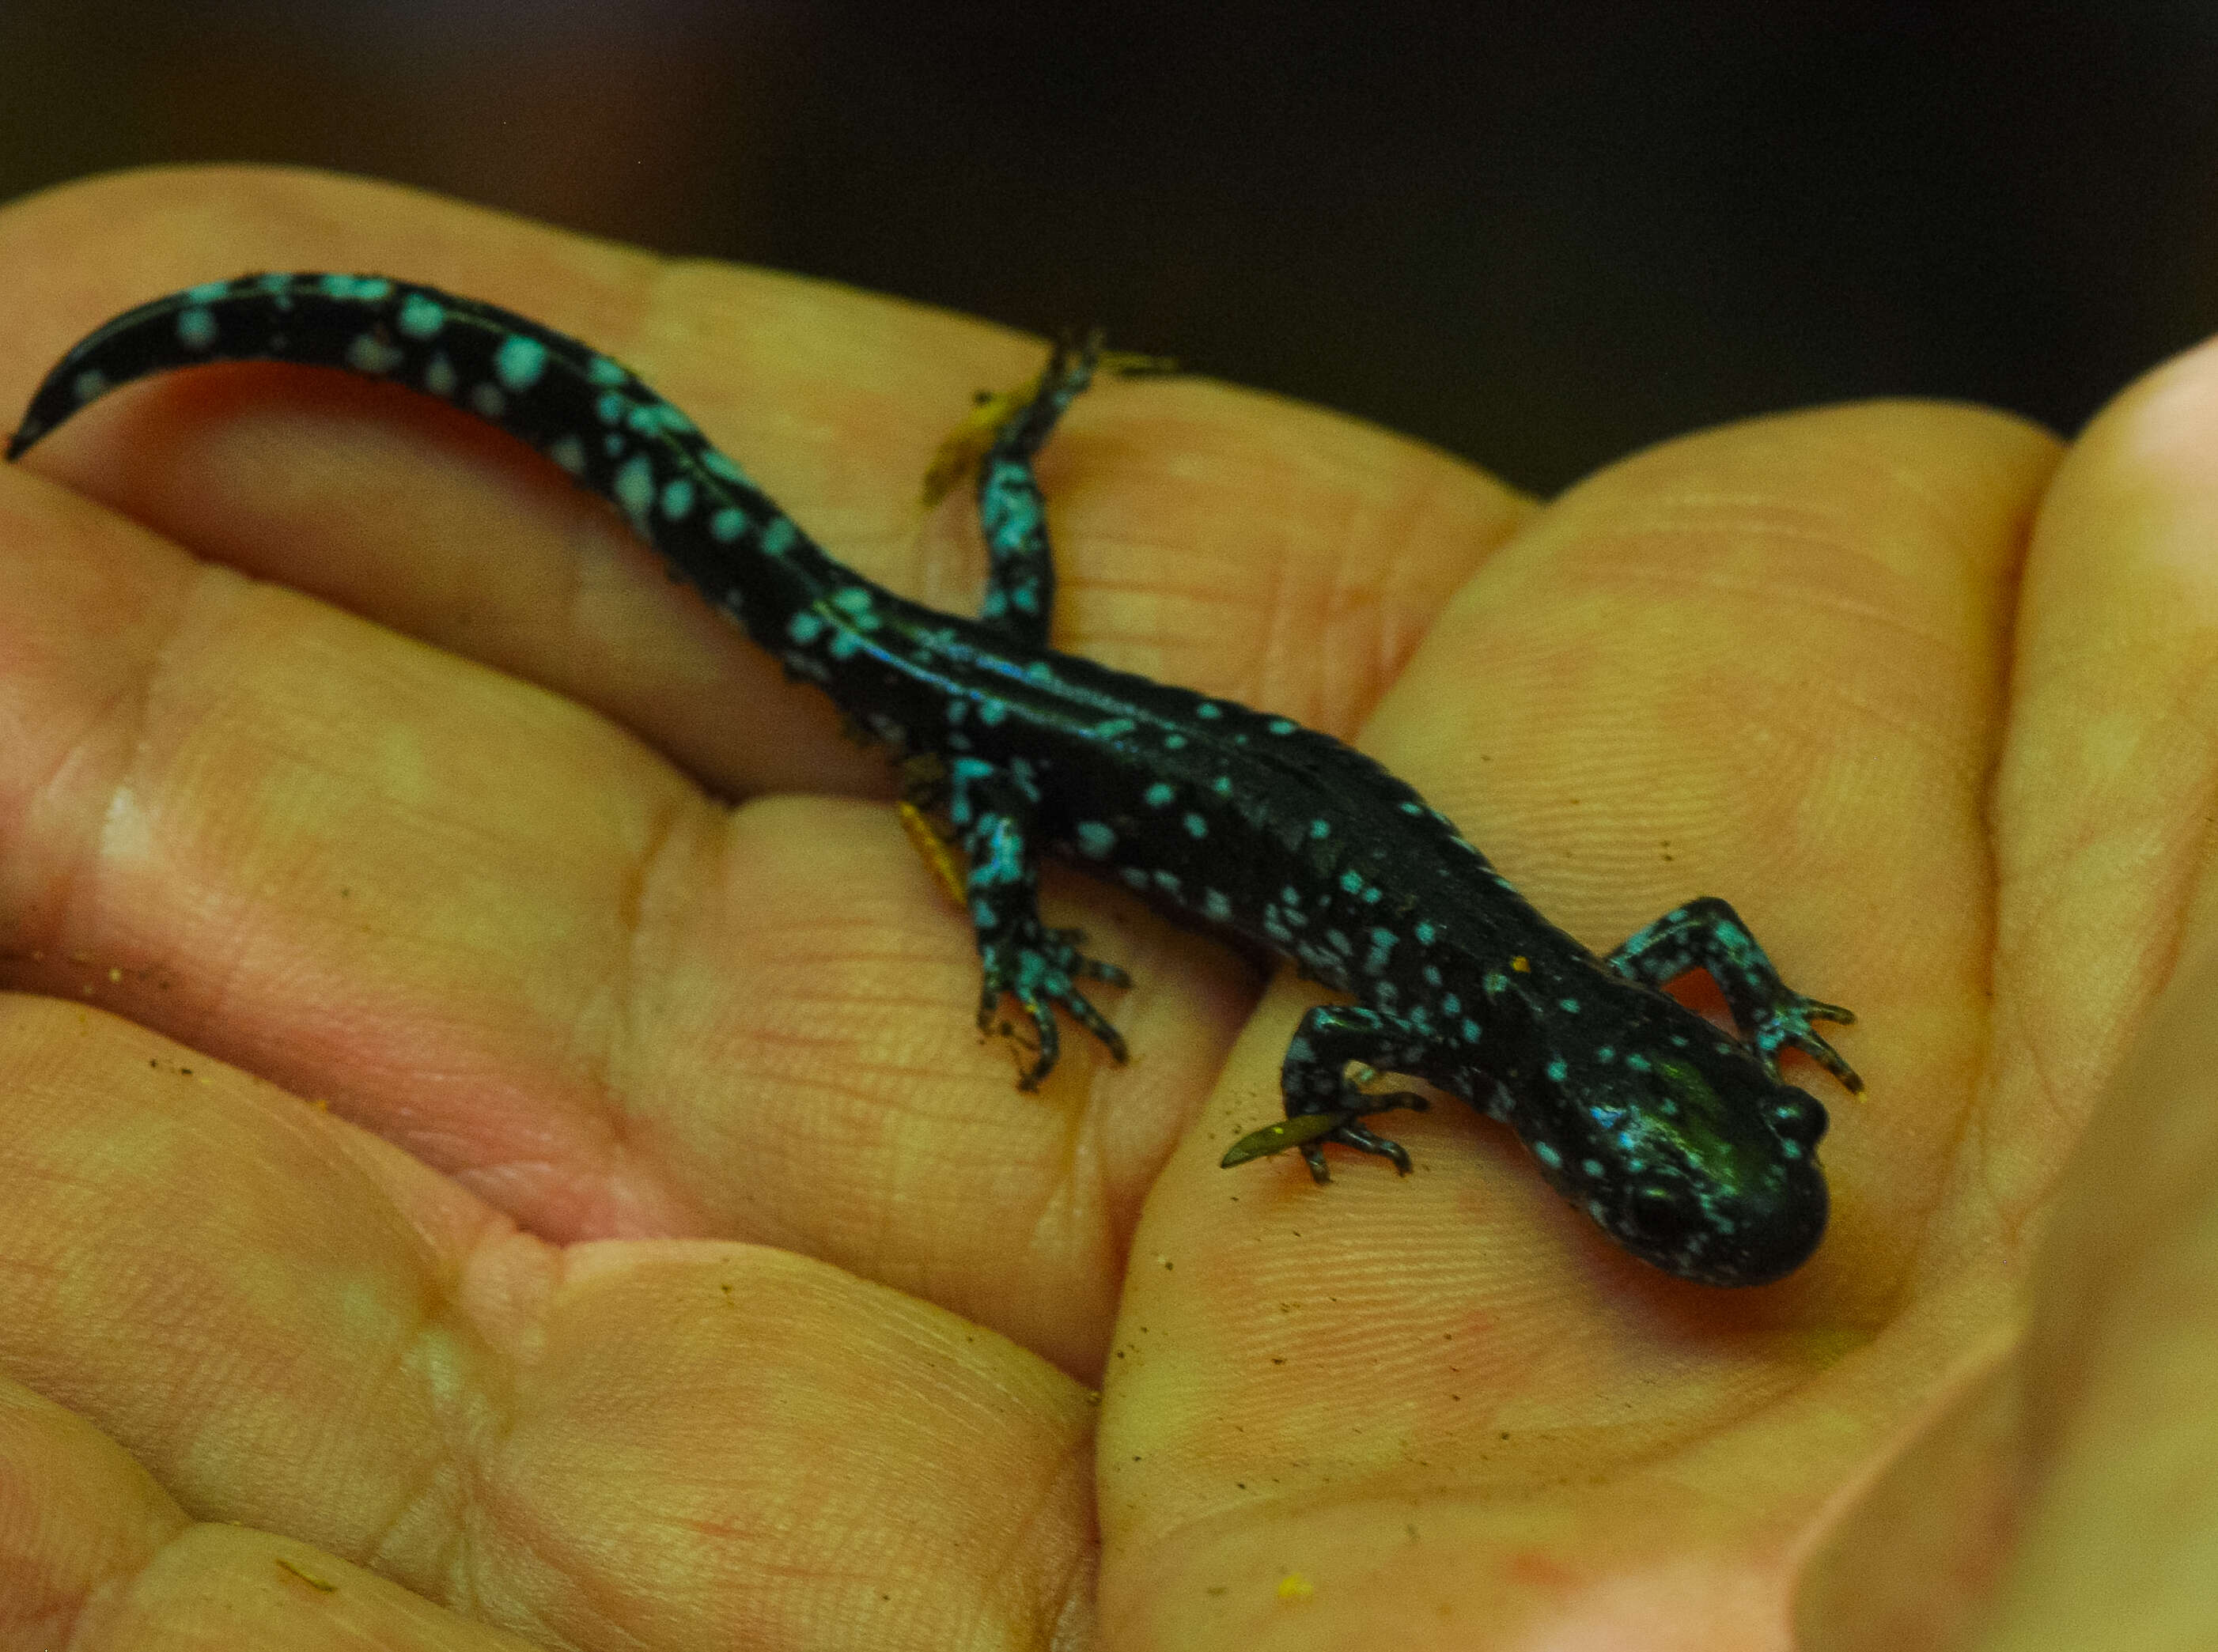 Image of Blue-spotted Salamander